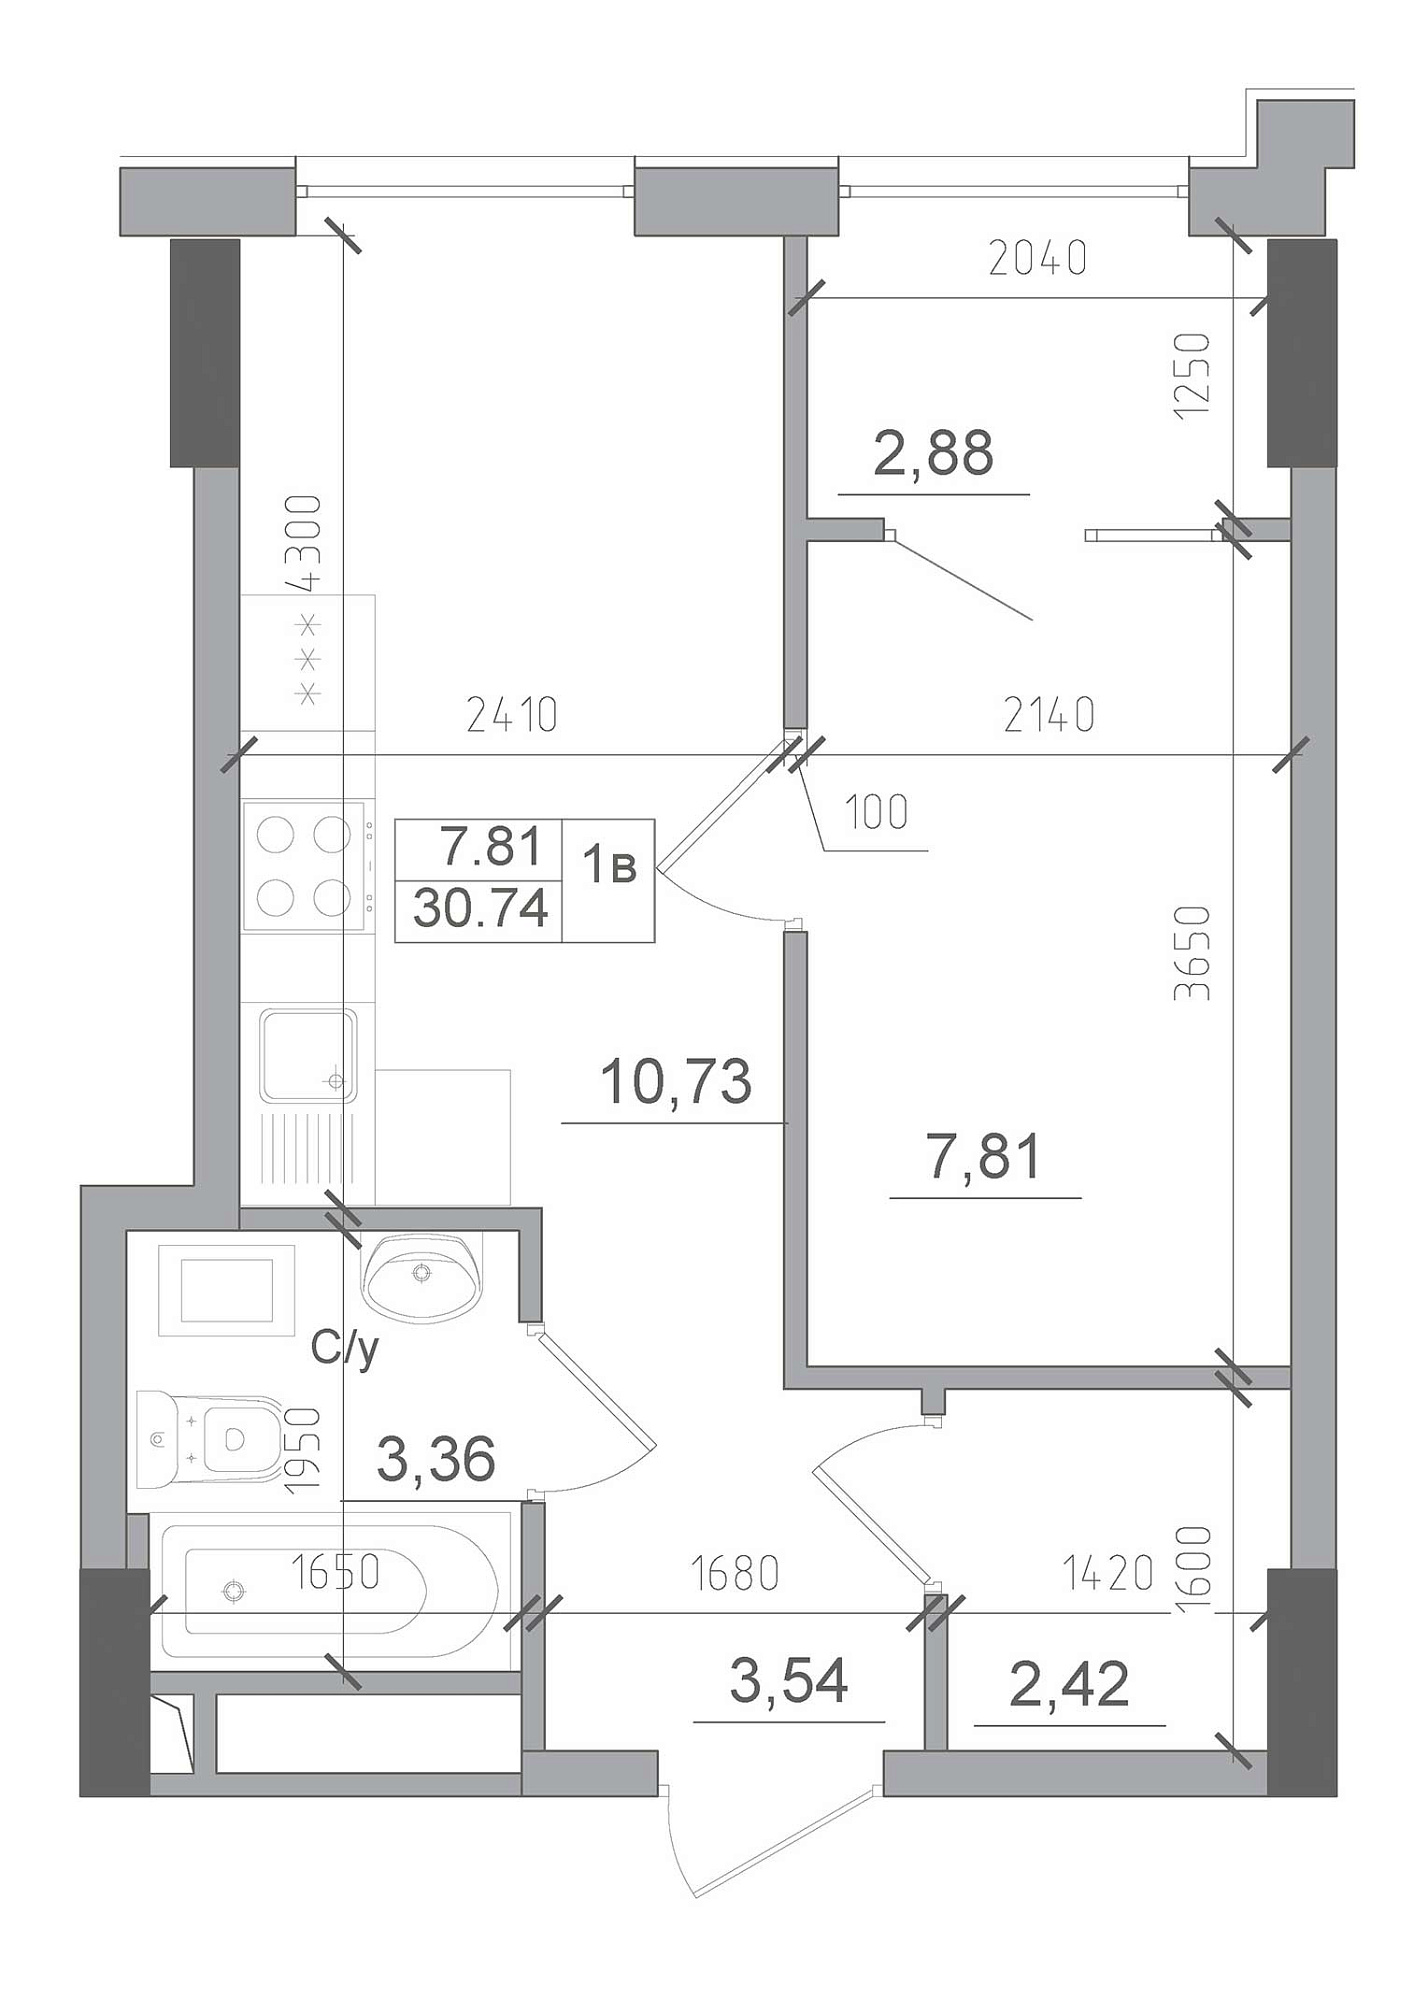 Планування 1-к квартира площею 30.74м2, AB-22-04/00003.